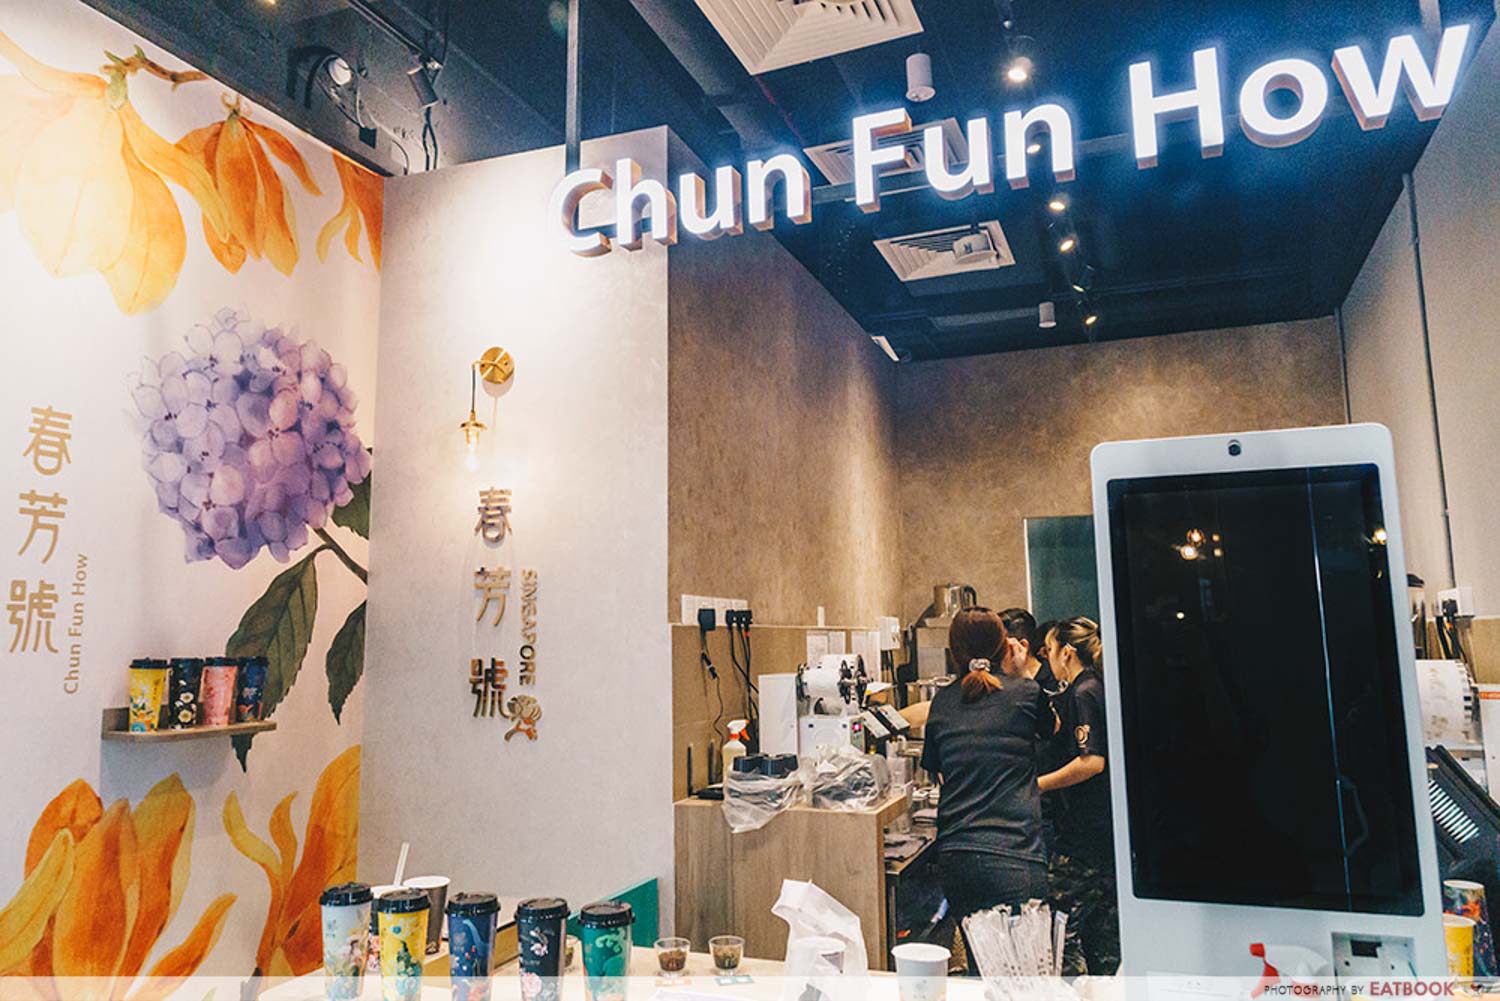 Chun Fun How - Front door